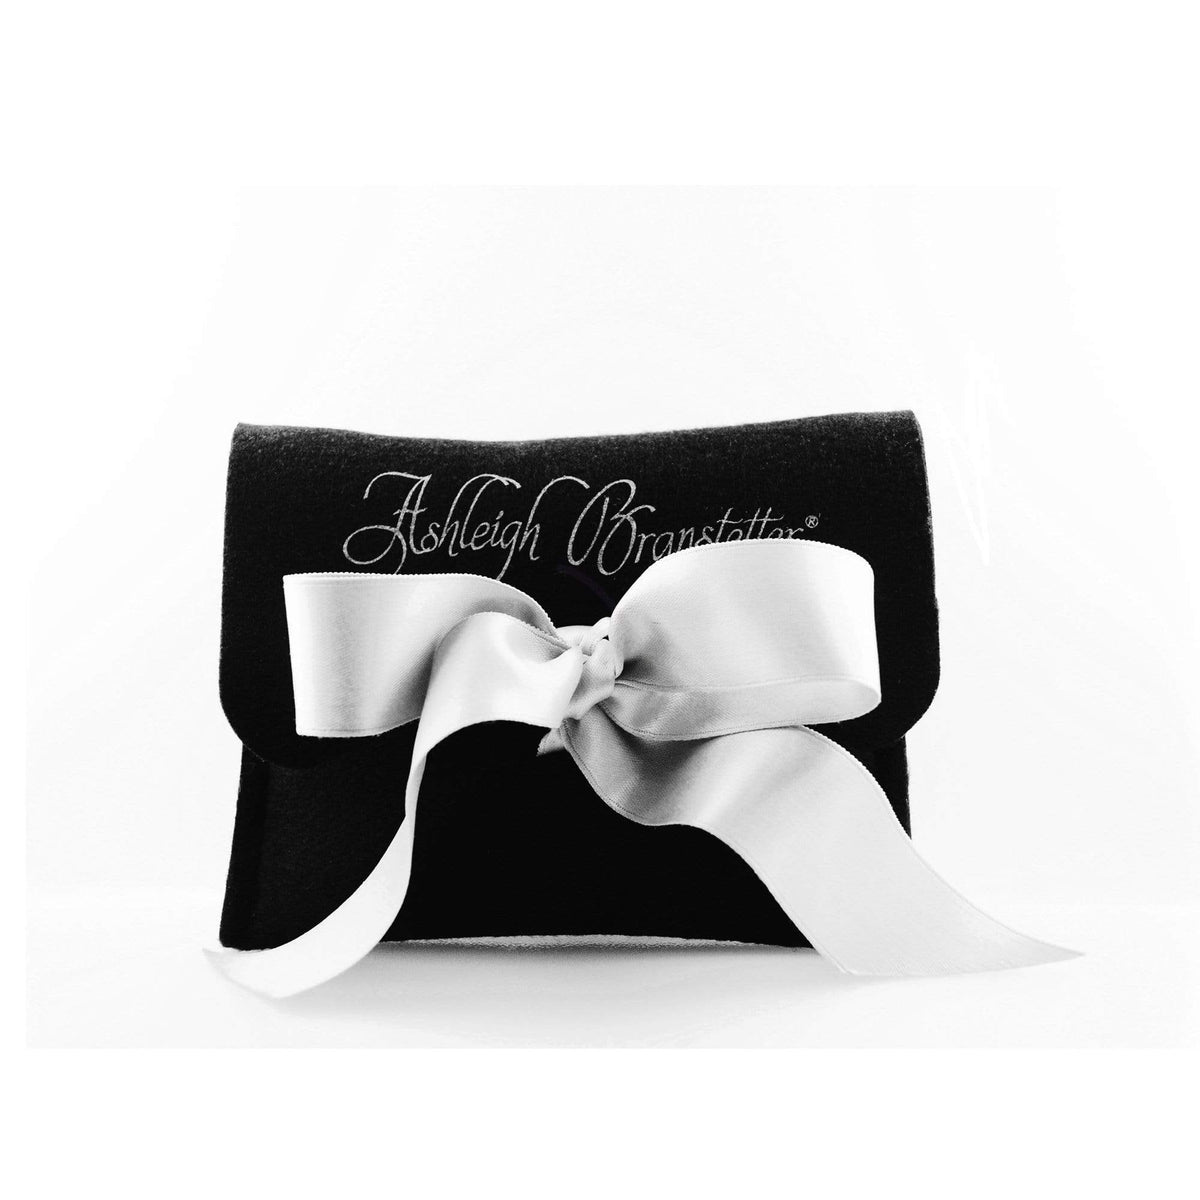 Terpsichore Rose Quartz Earrings 18K White Gold - Ashleigh Branstetter®